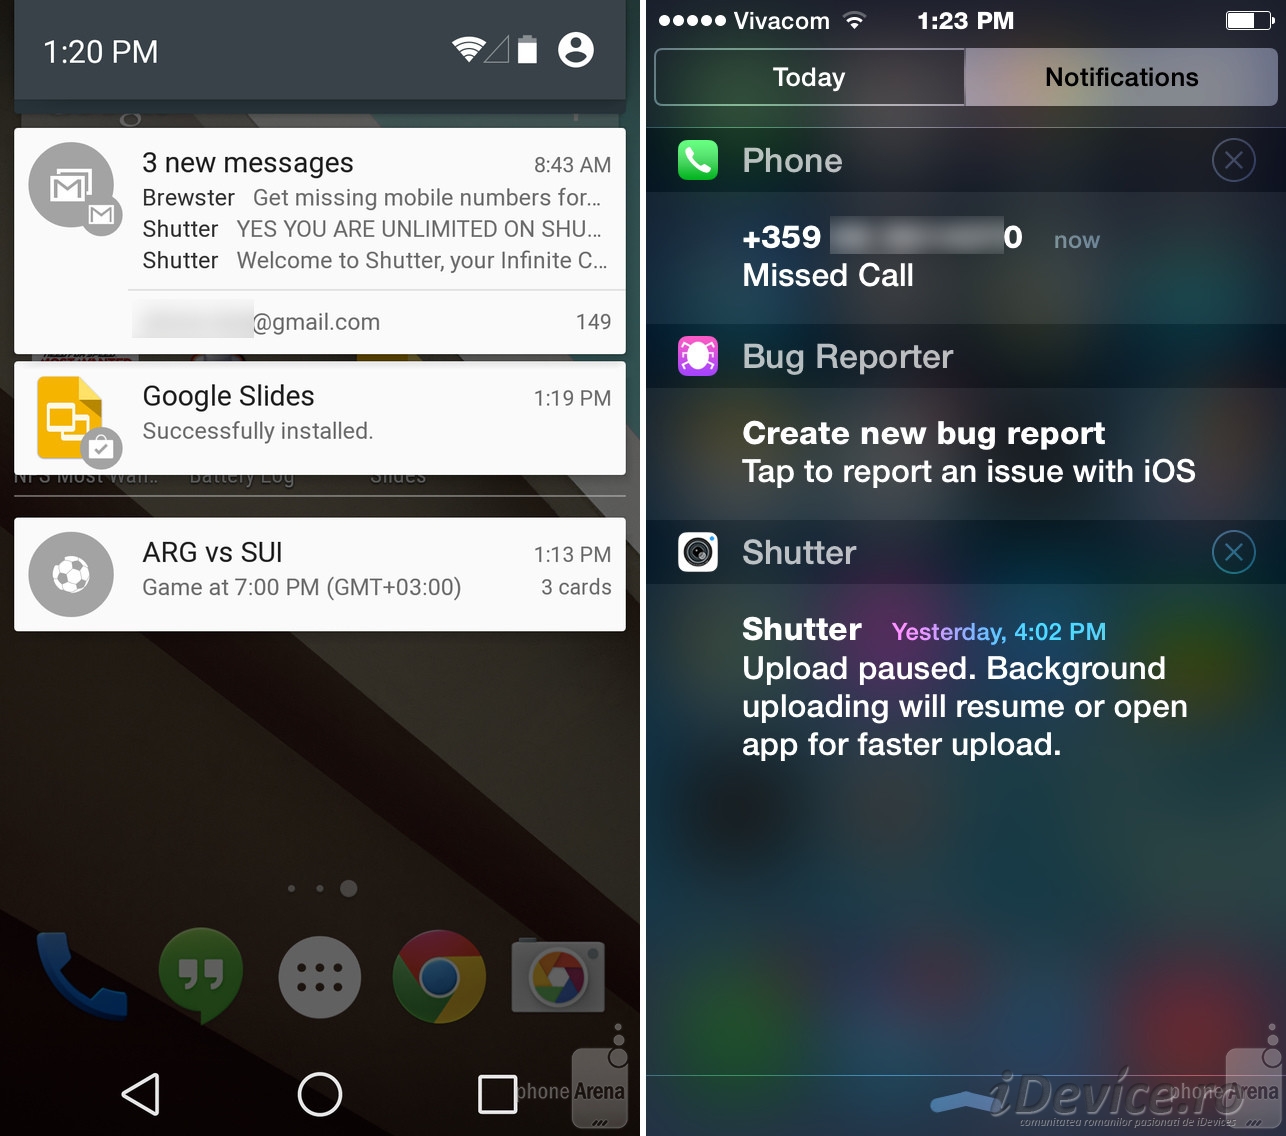 2 new messages. Уведомление Android. Фоновые уведомления андроид. Управление уведомлениями андроид. Android центр уведомлений.